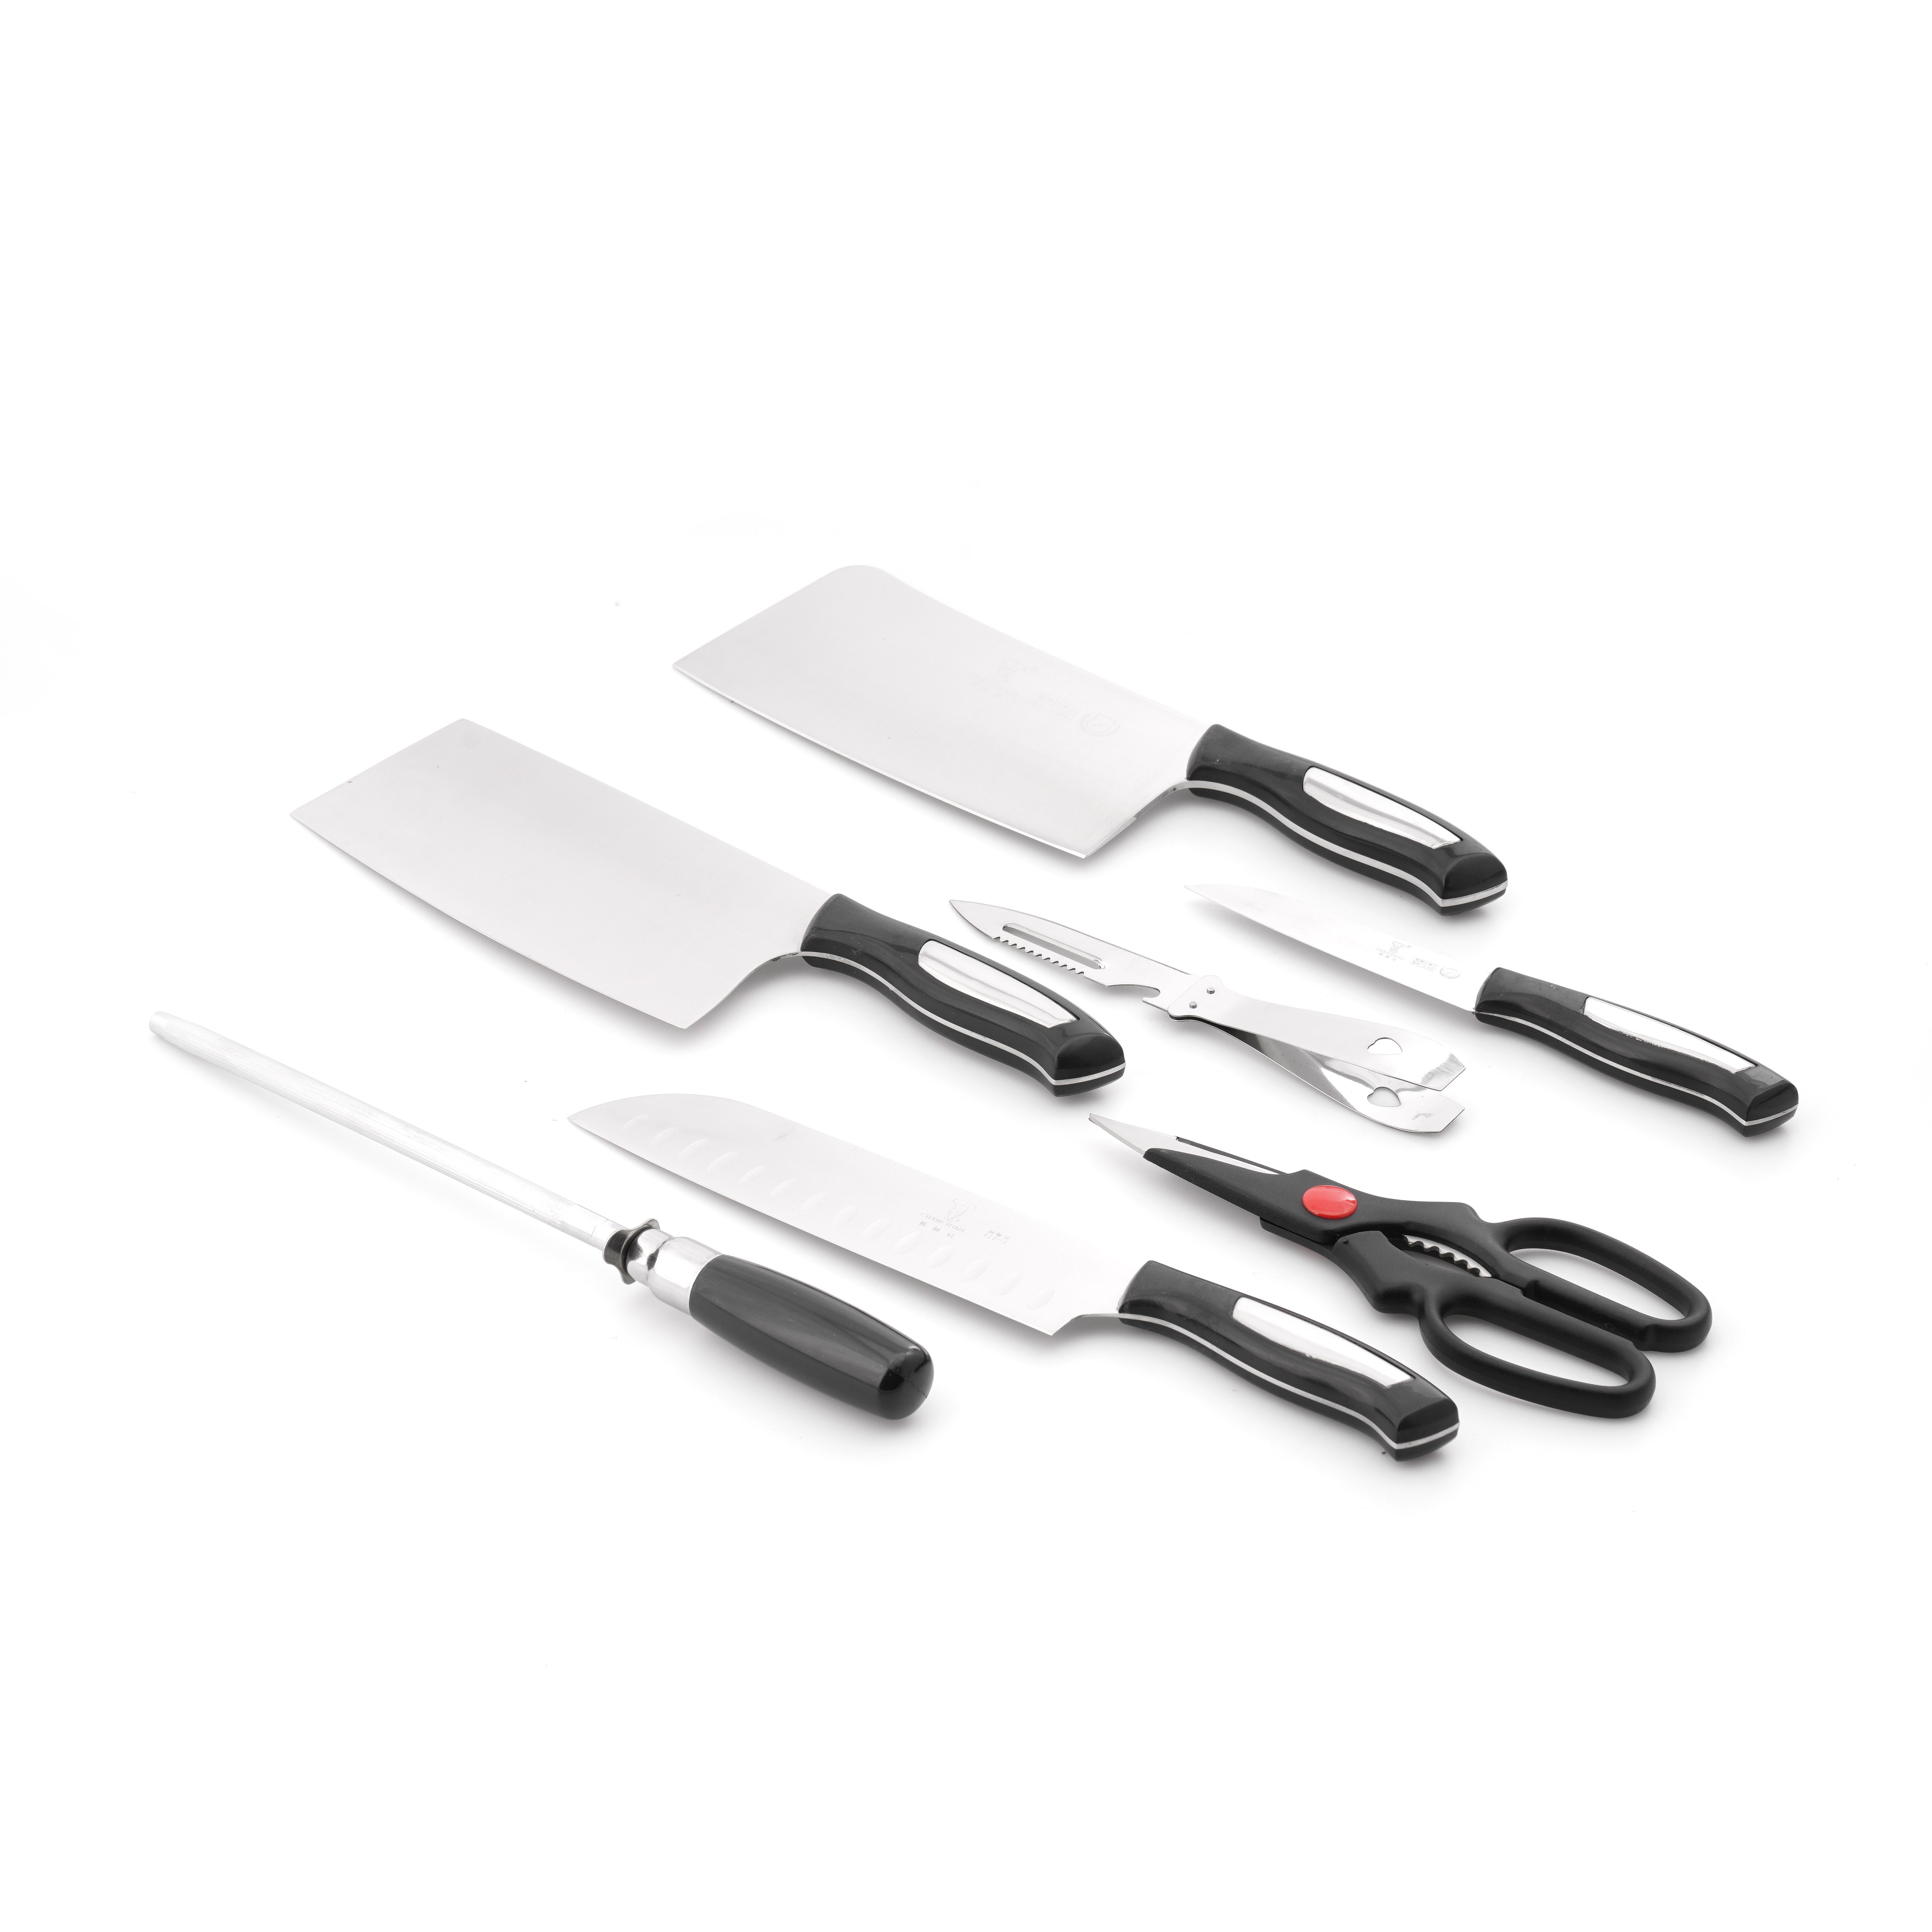 Bộ dao nhà bếp 8 món (4 dao, 1 dao bào, 1 đồ mài, 1 kéo, 1 hộp đựng dao bằng gỗ)